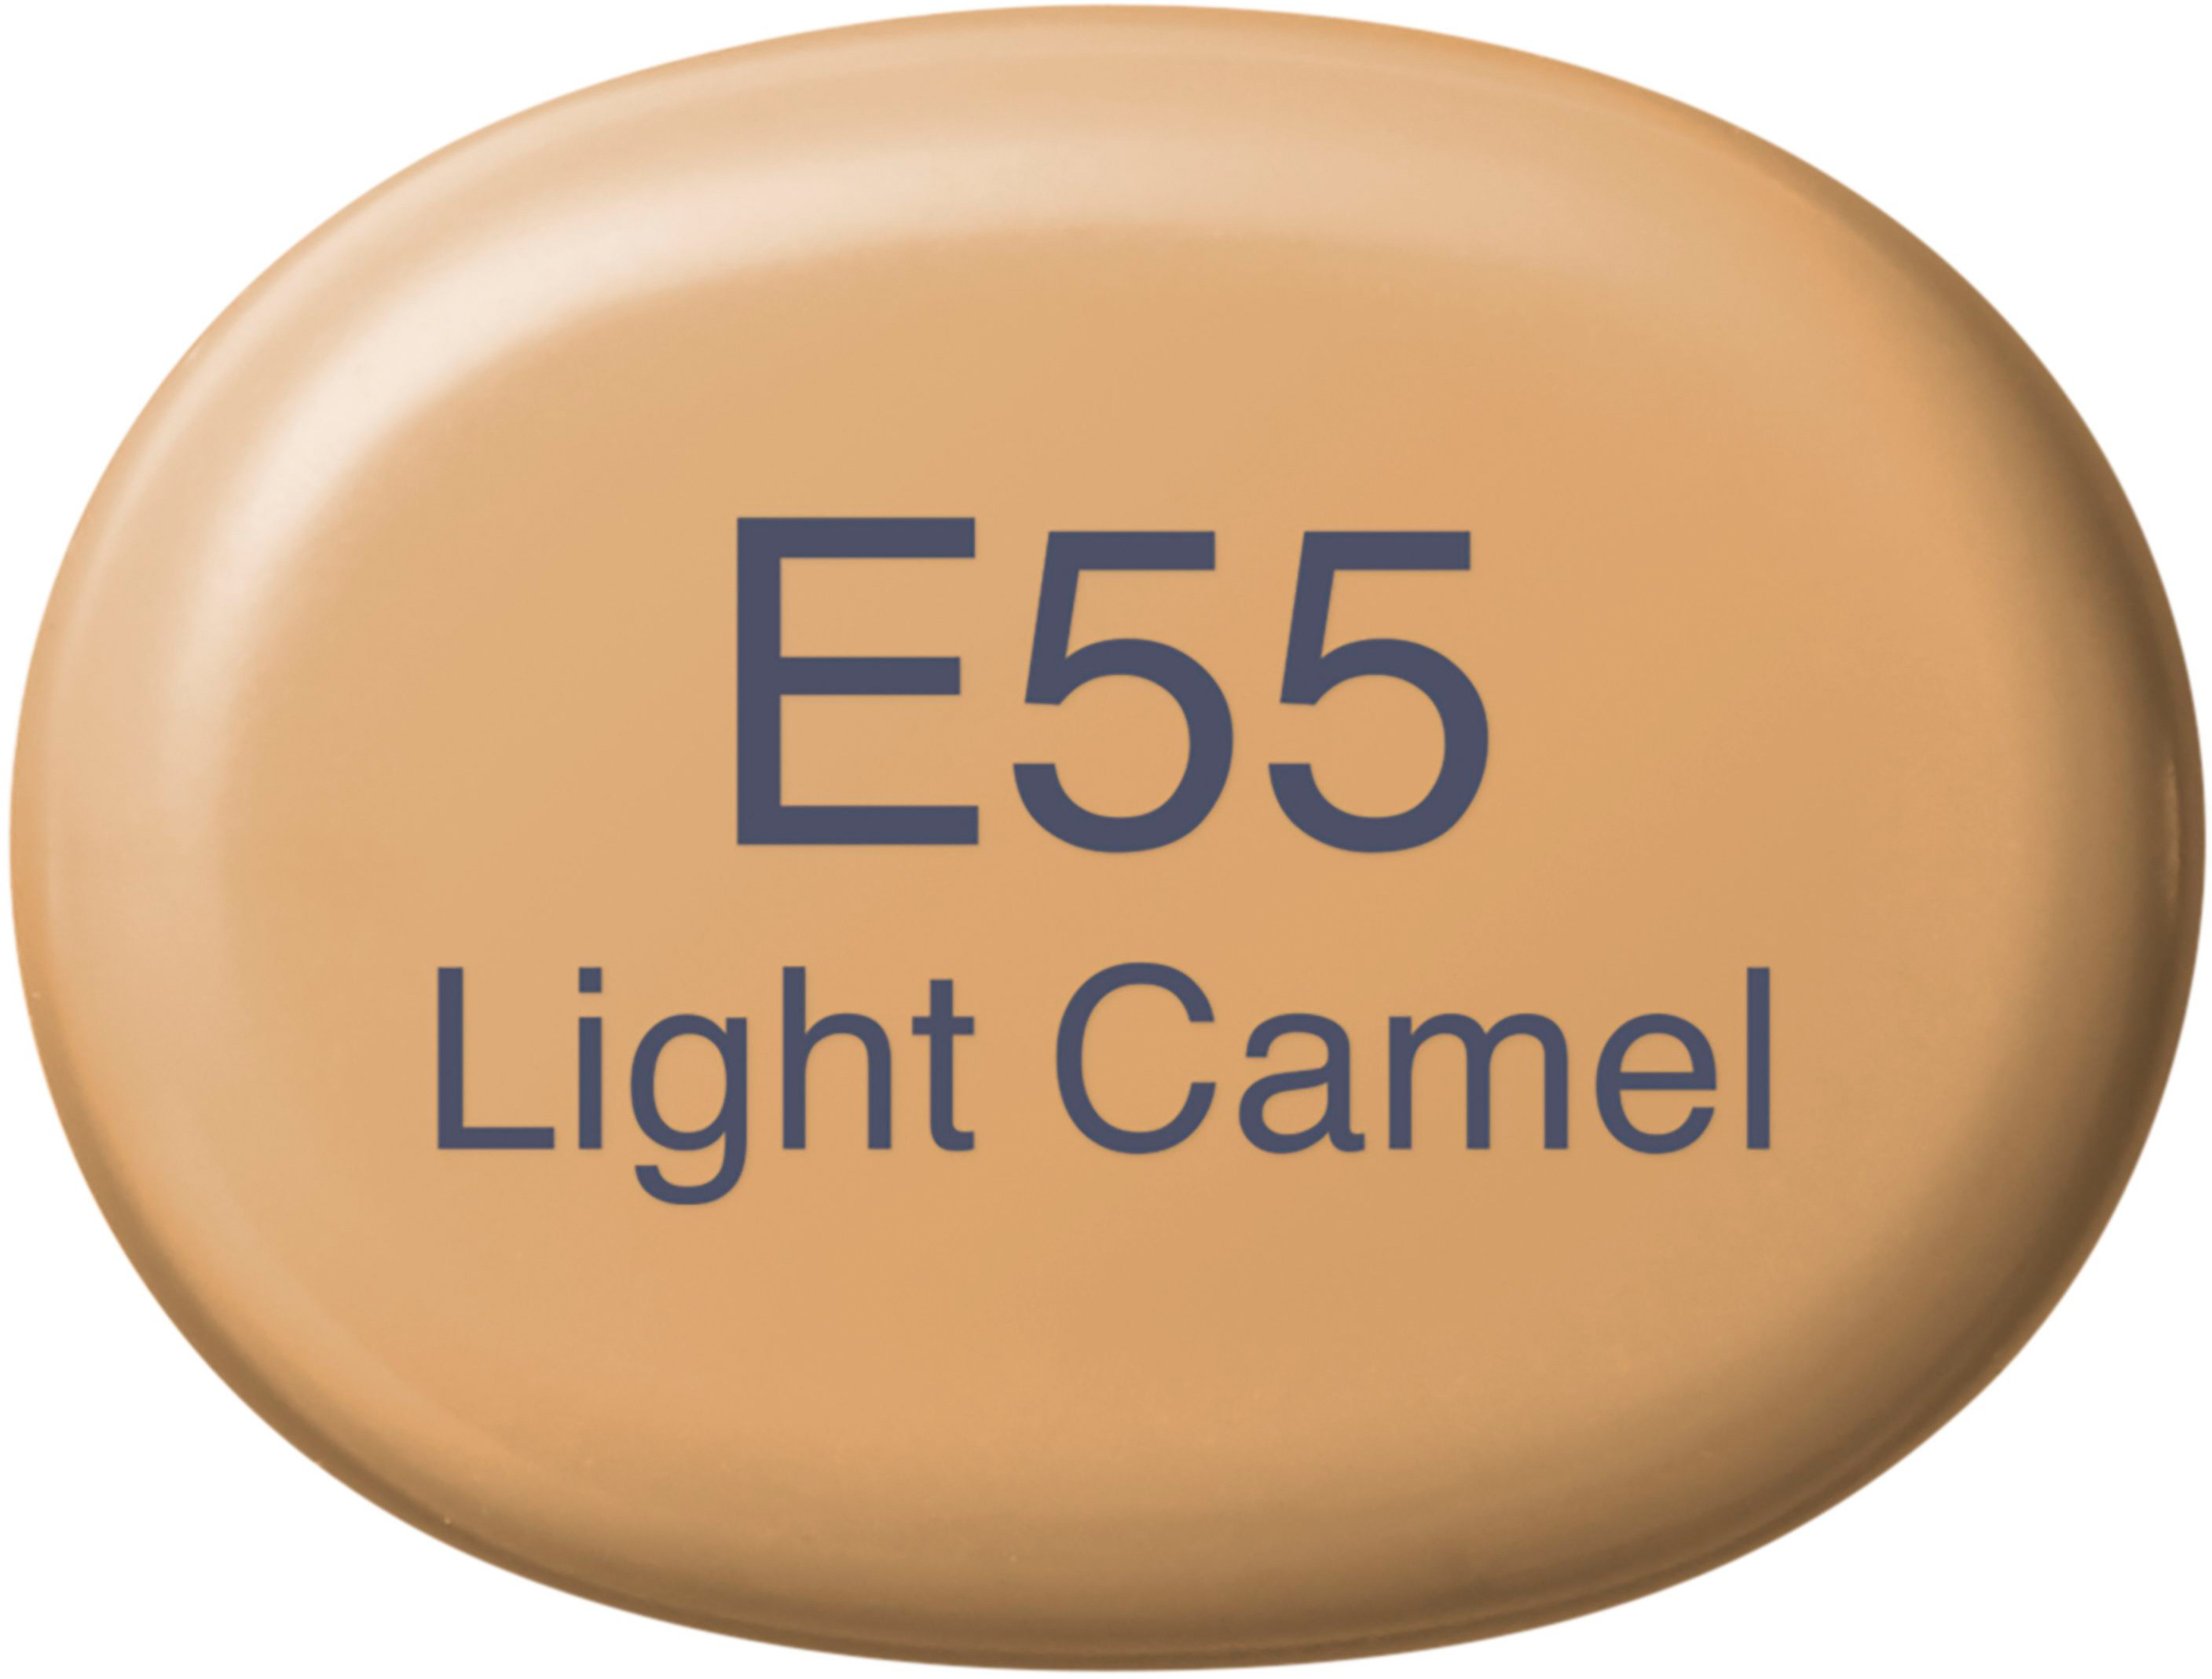 COPIC Marker Sketch 21075238 E55 - Light Camel